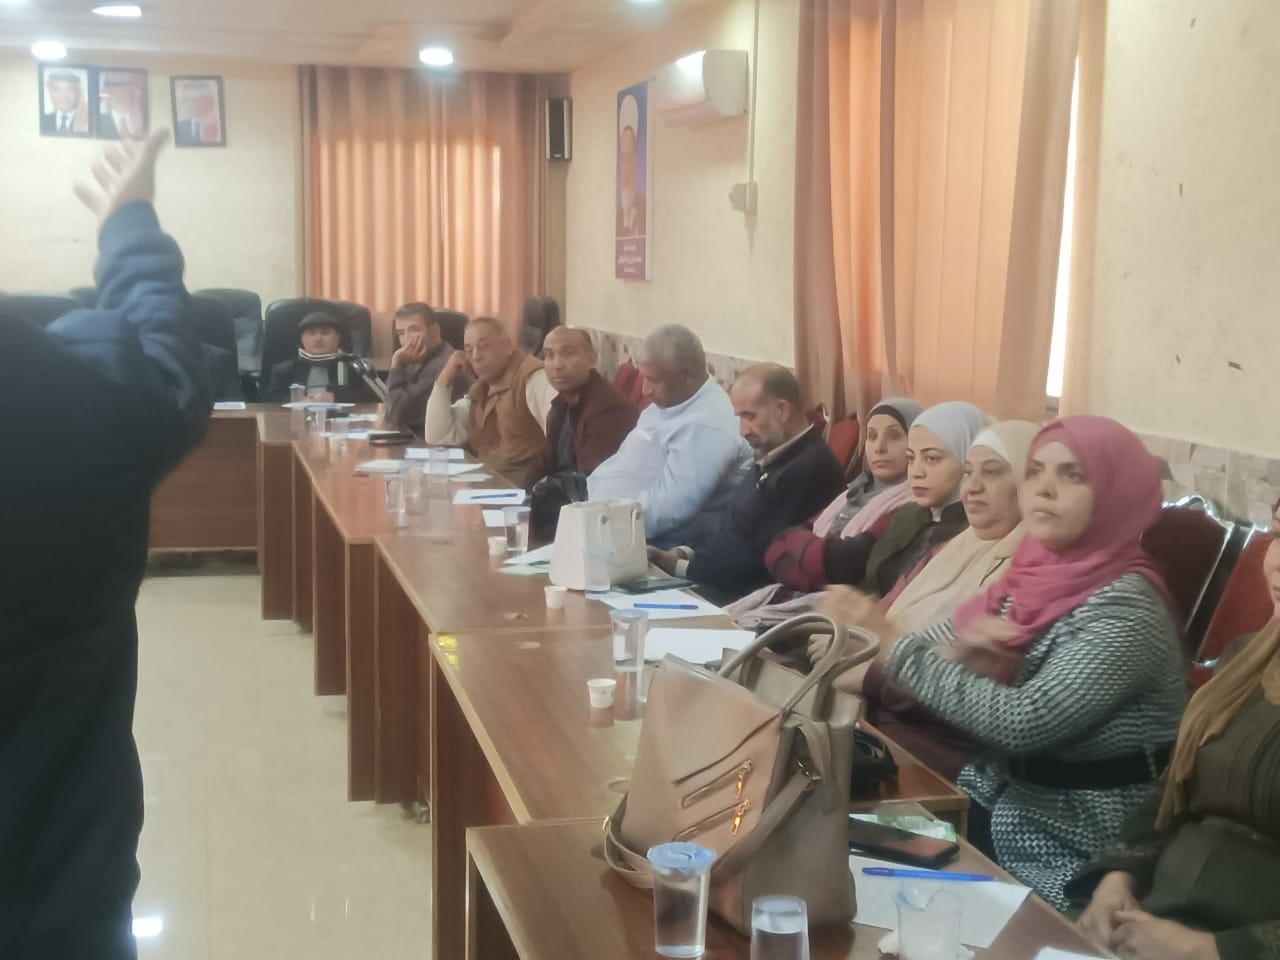 أعمال "عمان العربية" تنفذ دورة تدريبية لاتحاد الجمعيات الخيرية في محافظة البلقاء2